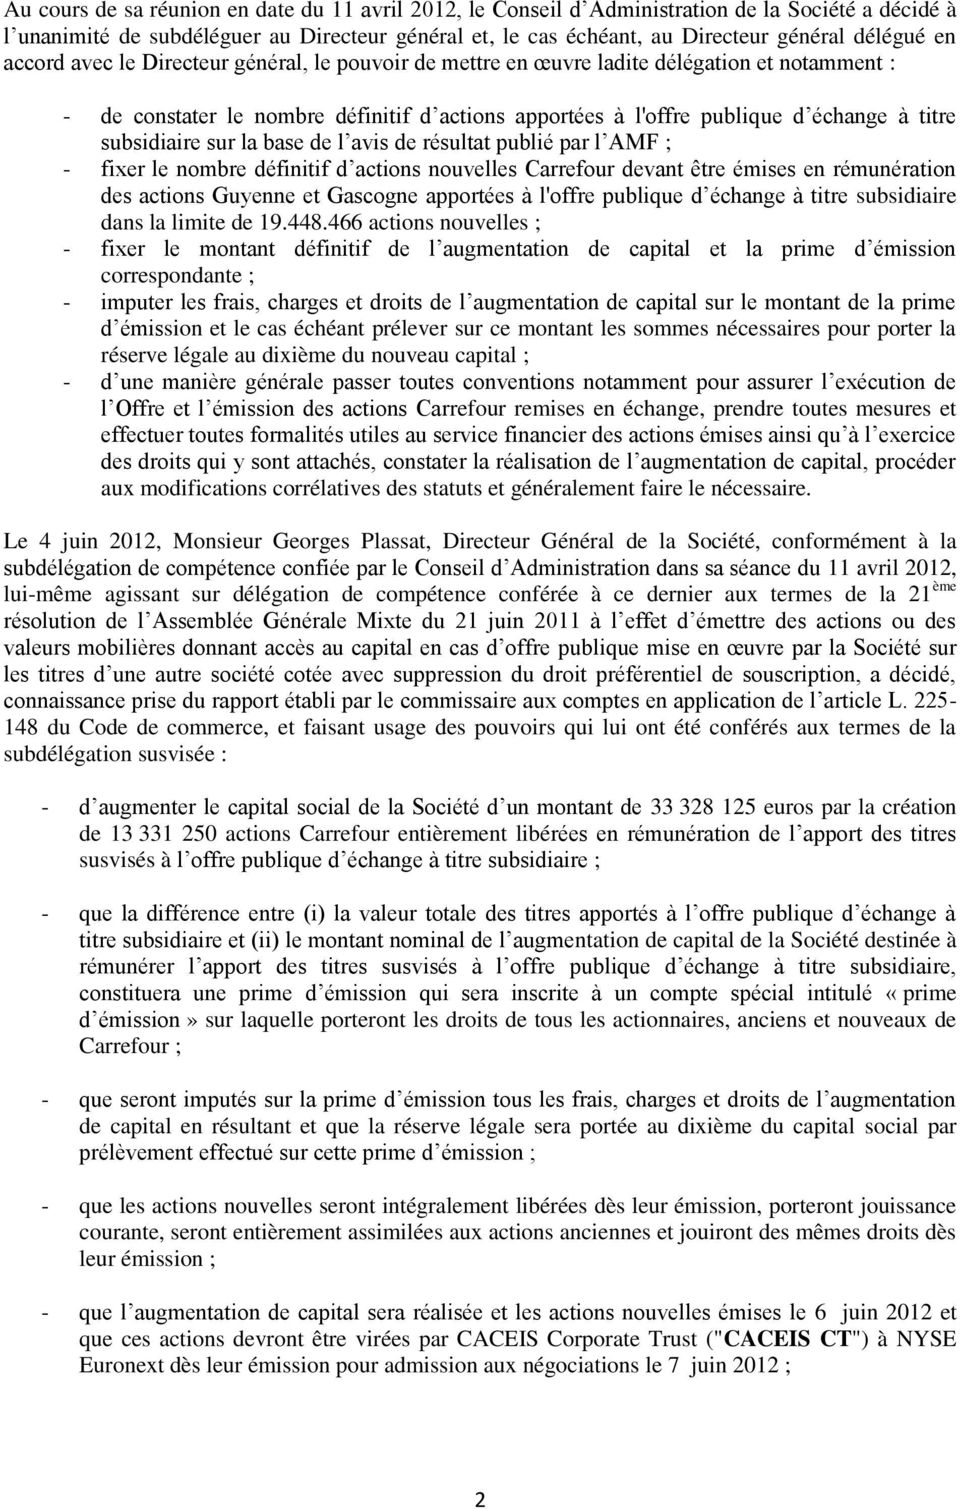 subsidiaire sur la base de l avis de résultat publié par l AMF ; - fixer le nombre définitif d actions nouvelles Carrefour devant être émises en rémunération des actions Guyenne et Gascogne apportées